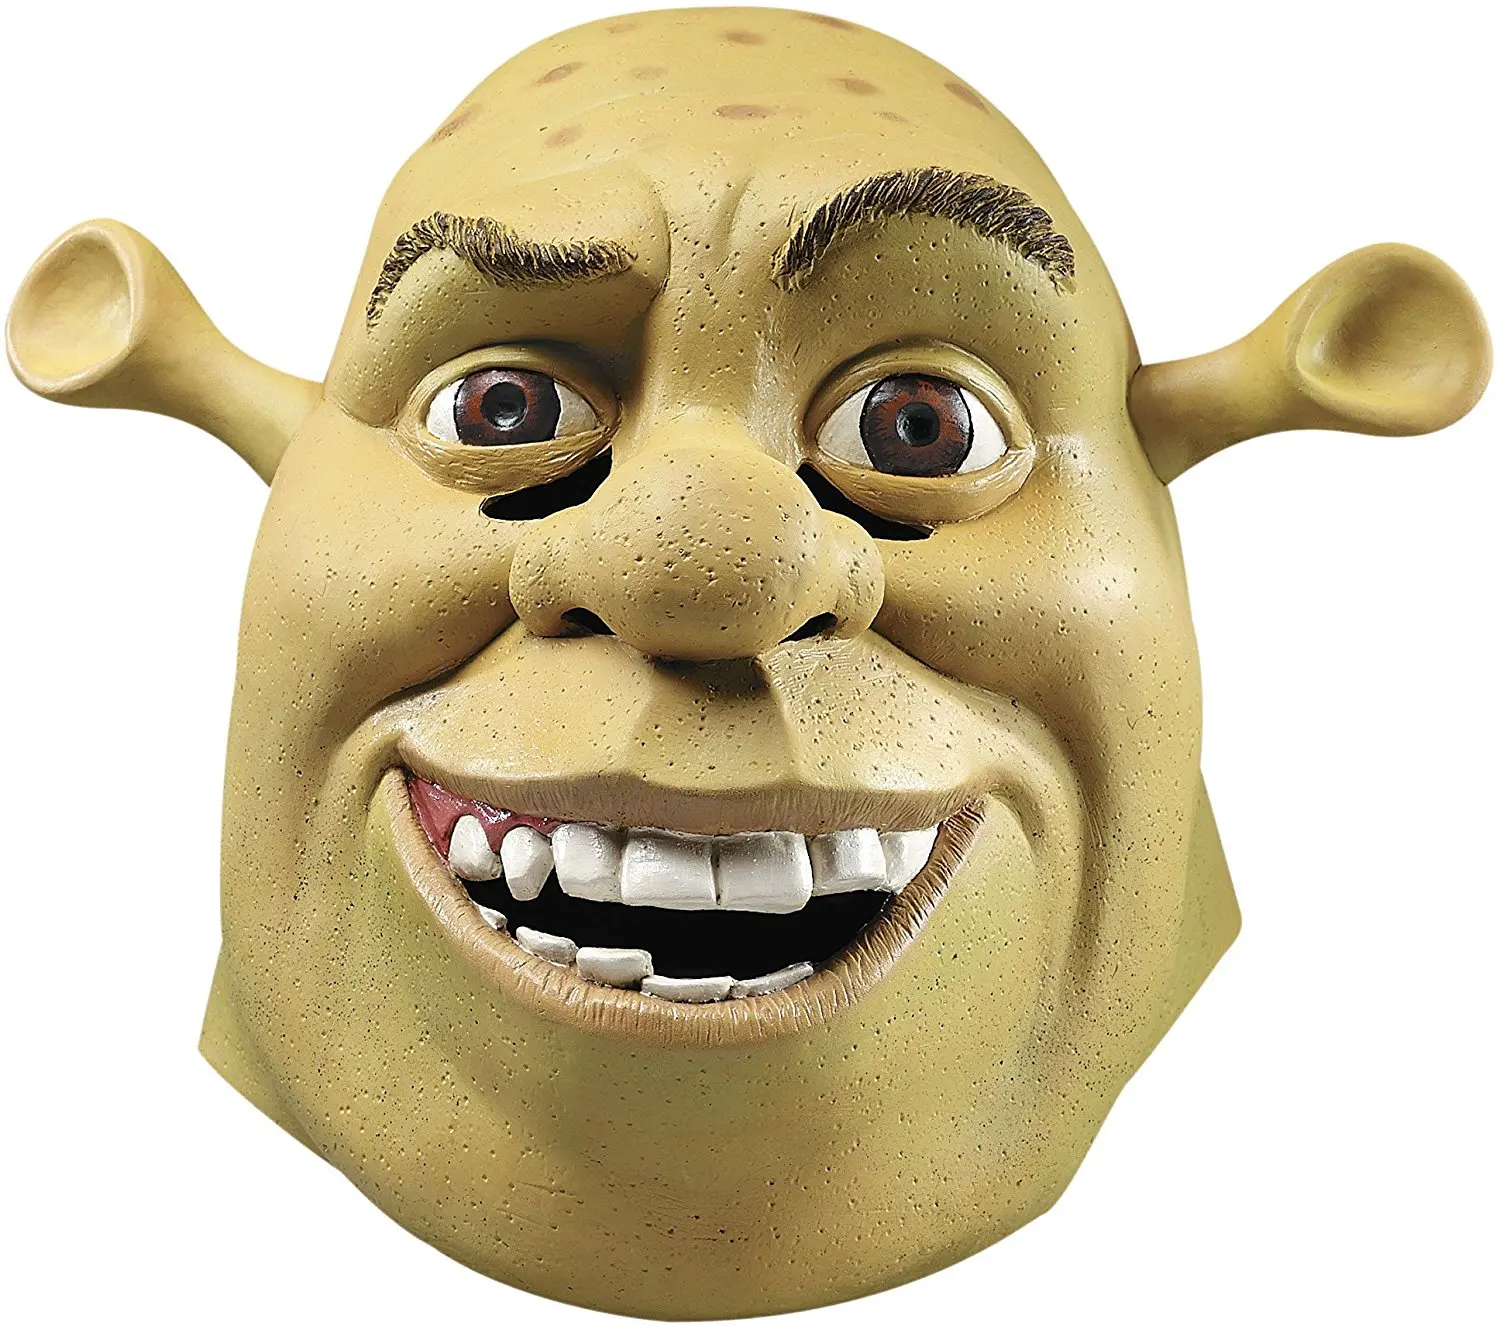 Shrek Face Mask